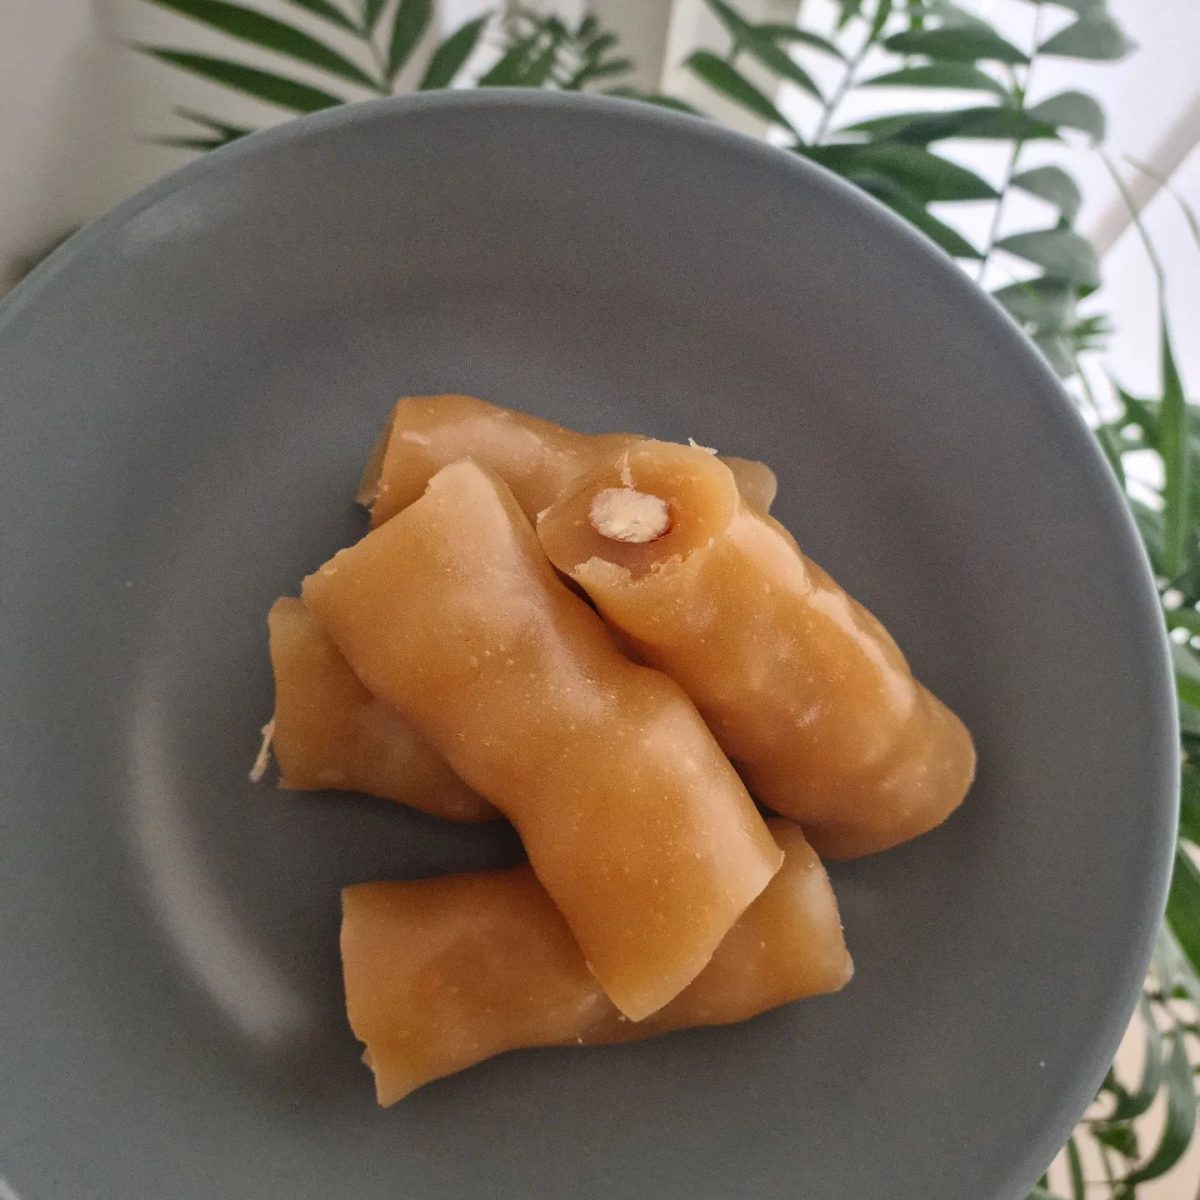 Σουσούκκος: Ένα θρεπτικό παραδοσιακό γλυκό που ξετρελαίνει τα παιδιά!